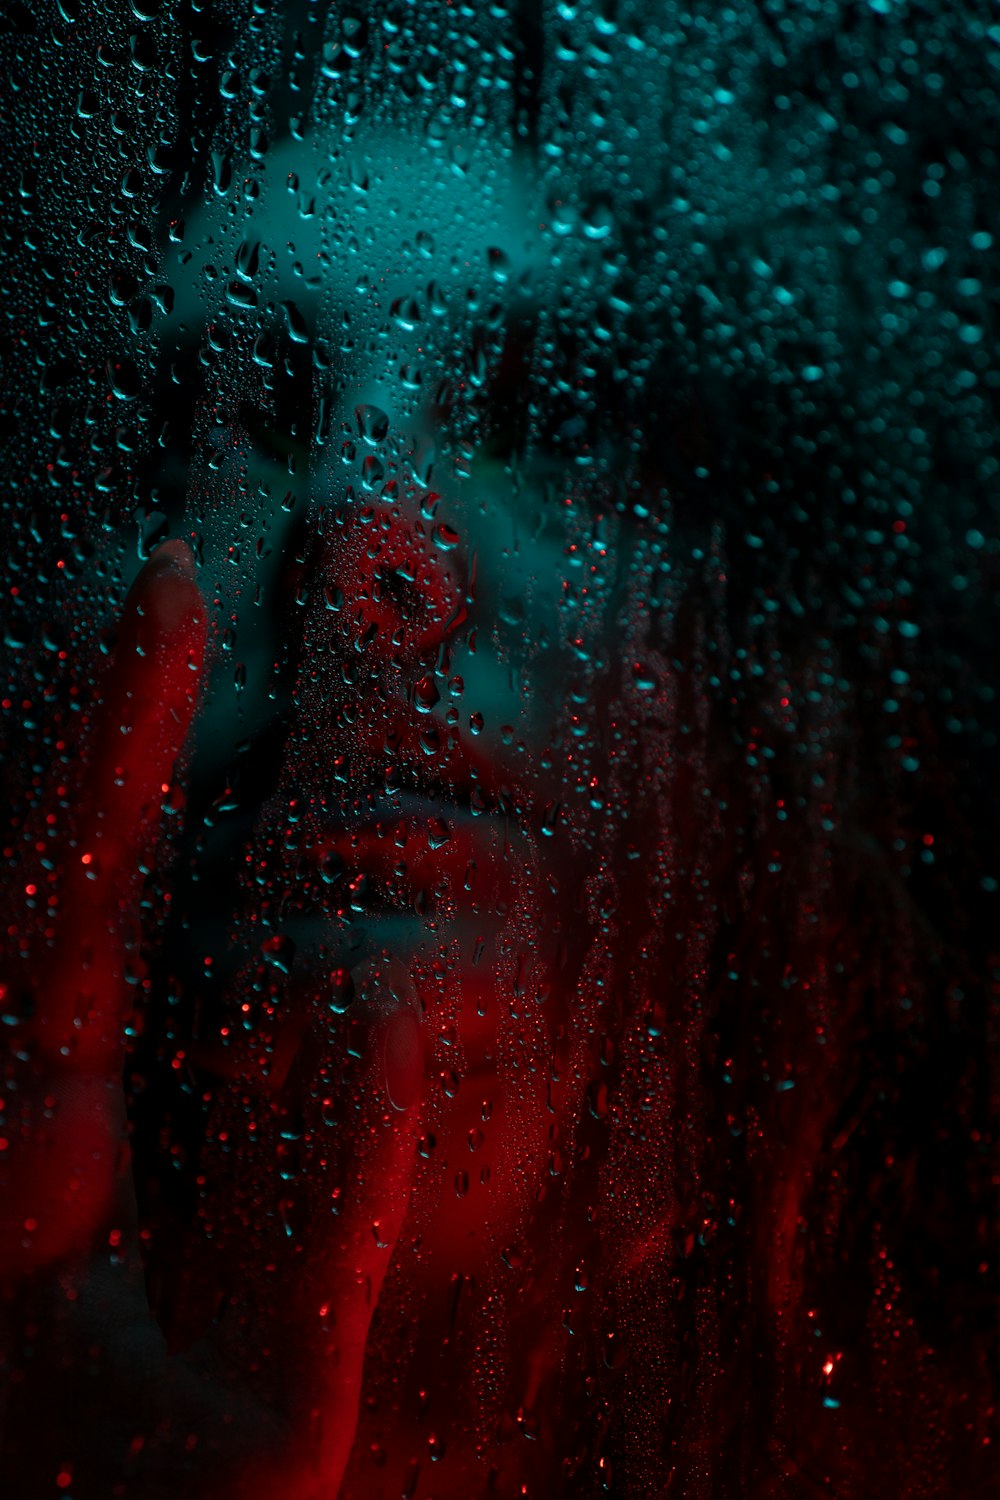 Una donna è vista attraverso una finestra coperta di pioggia